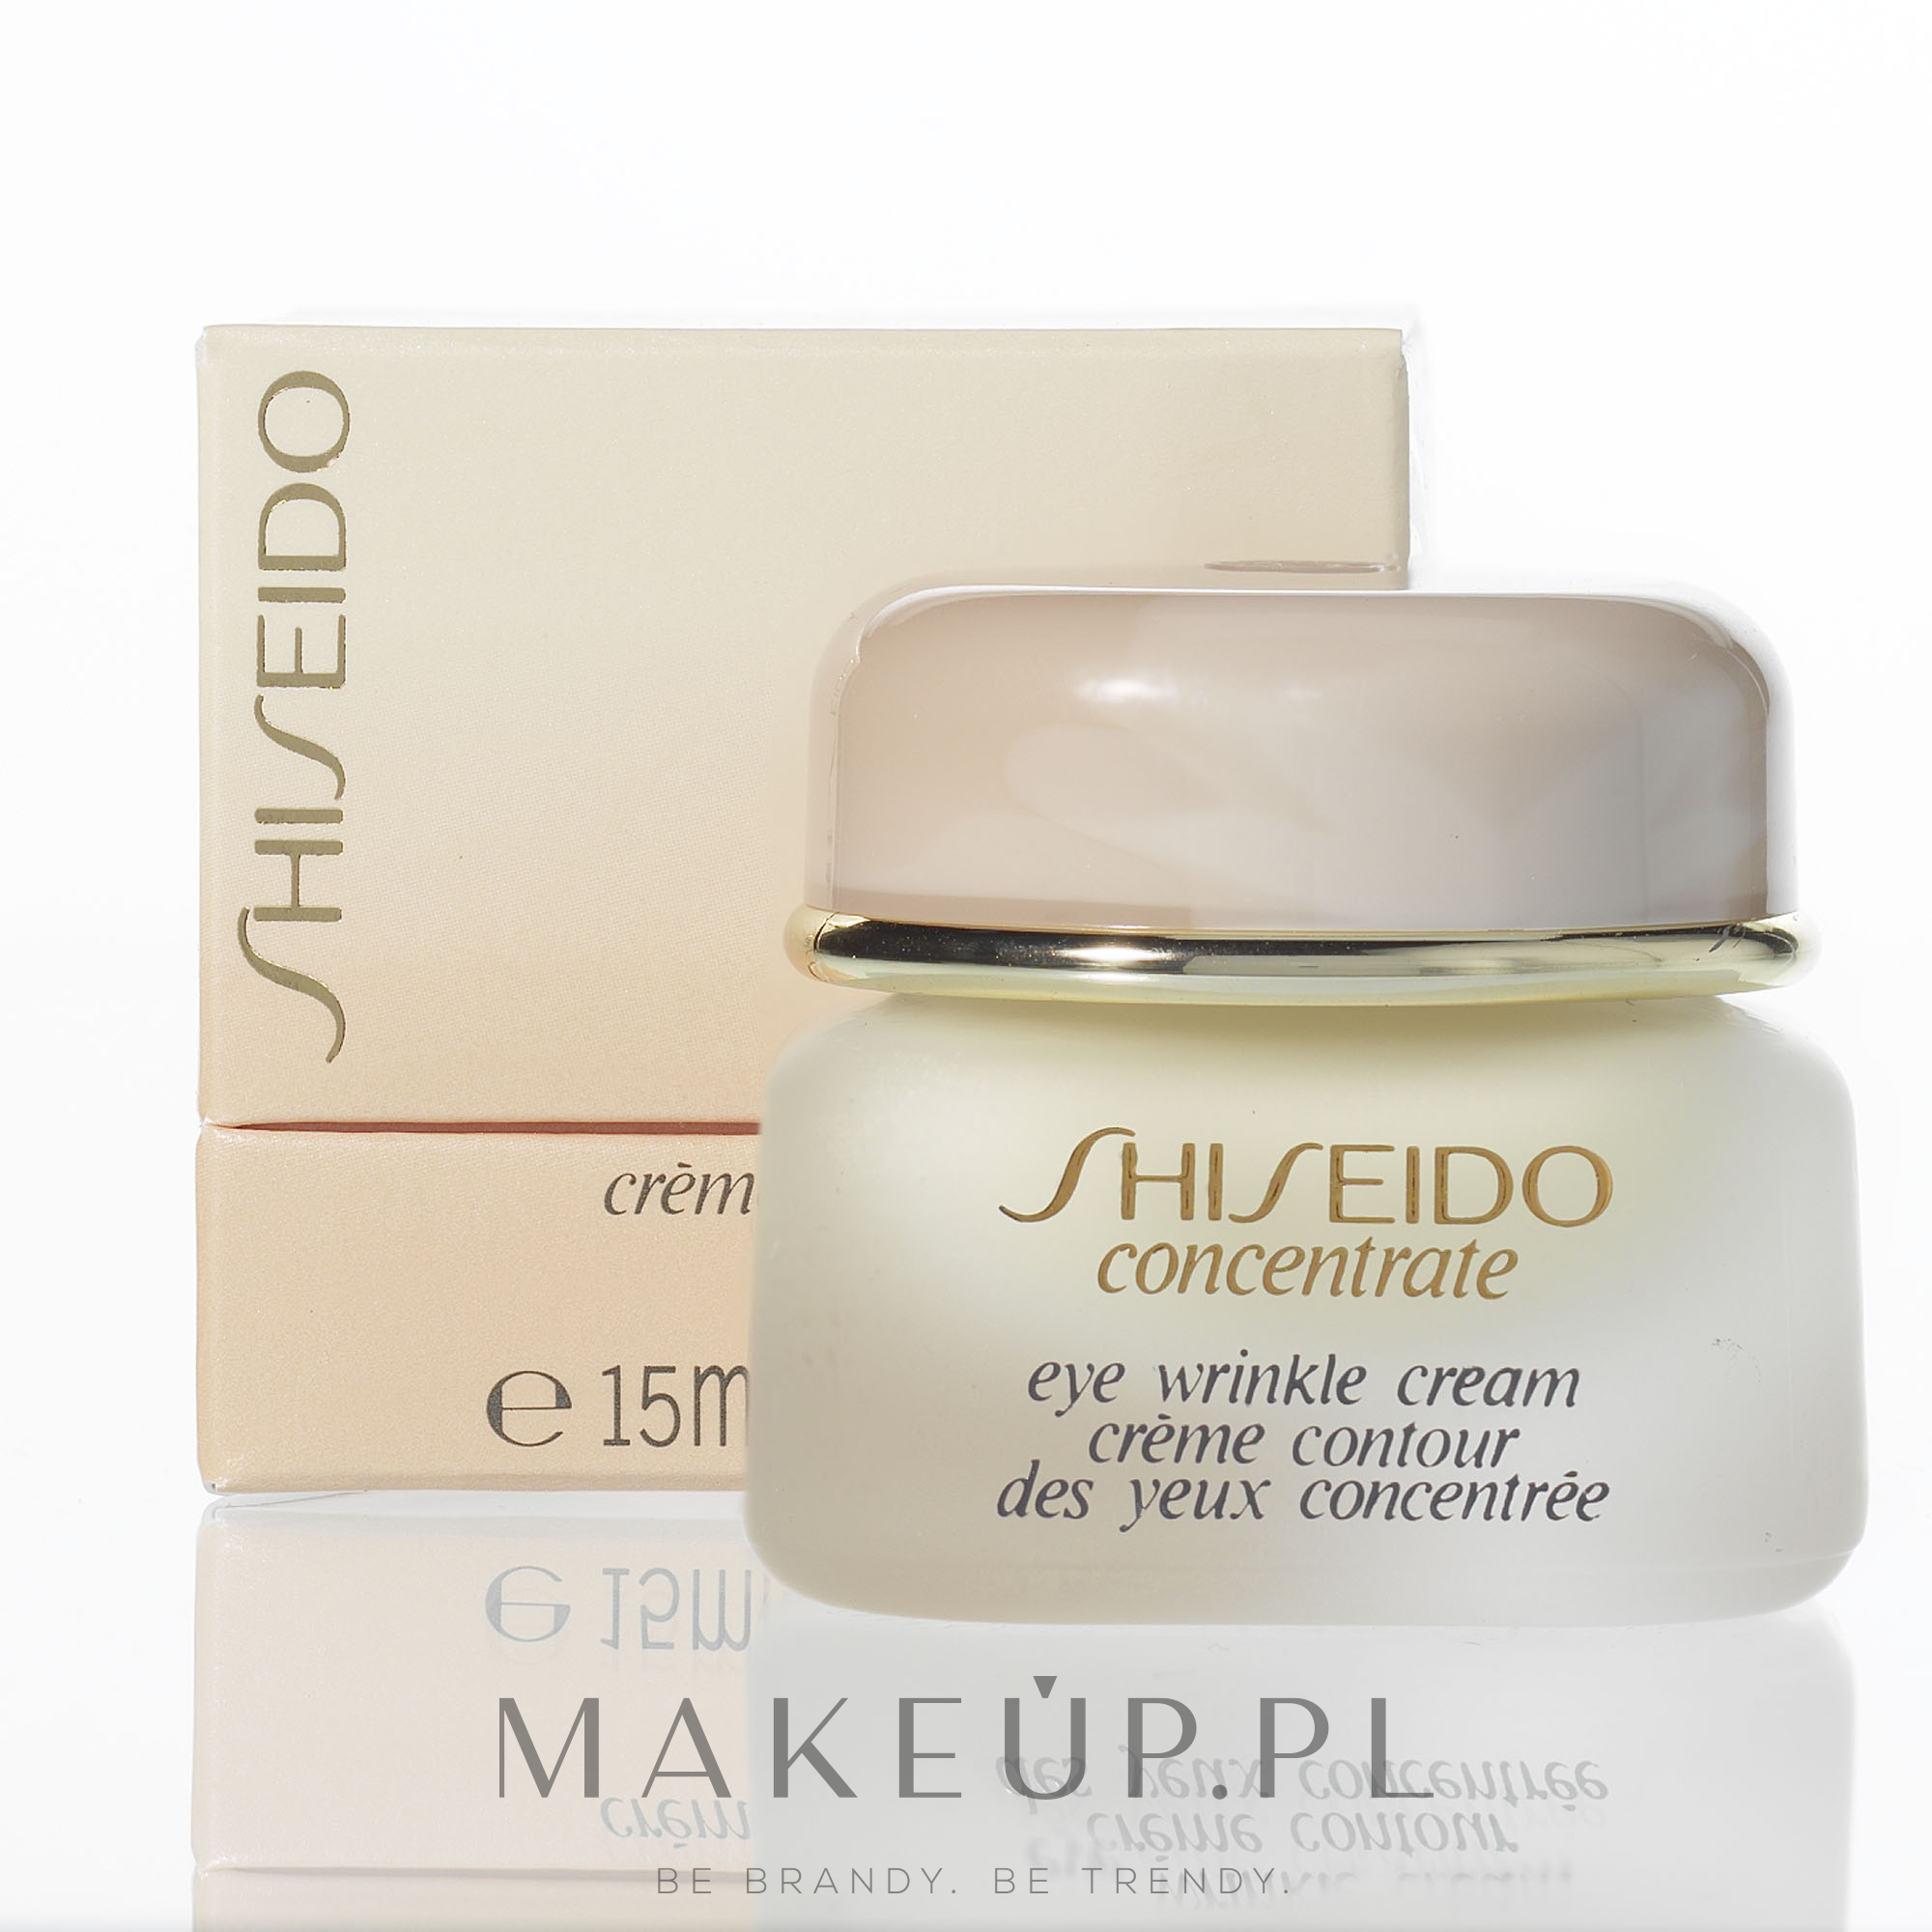 Krem przeciwzmarszczkowy do skóry wokół oczu - Shiseido Concentrate Eye Wrinkle Cream — Zdjęcie 15 ml